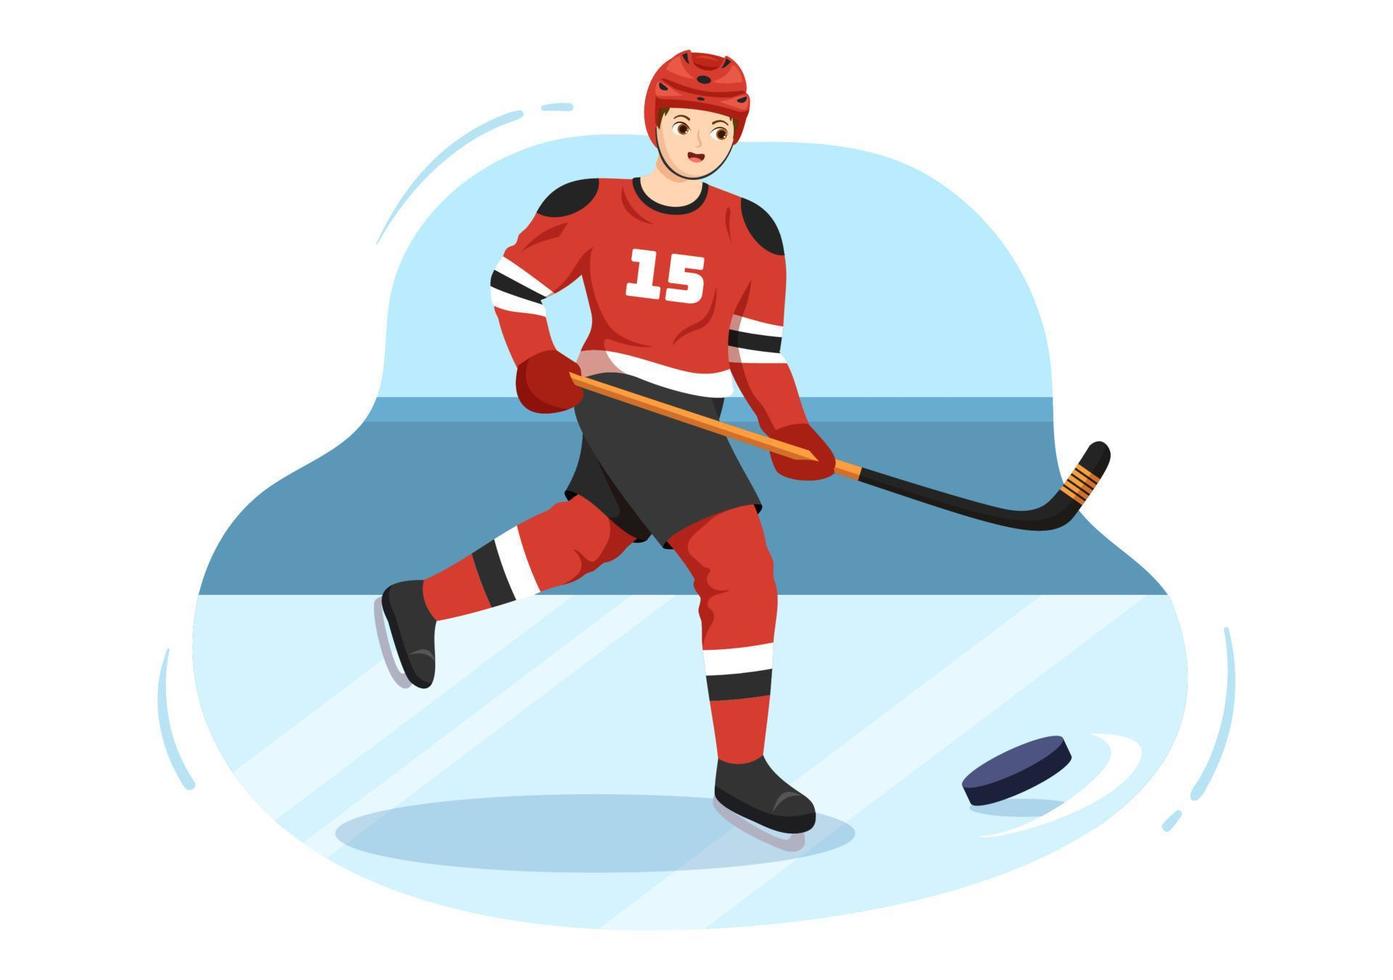 sport de joueur de hockey sur glace avec casque, bâton, rondelle et patins sur la surface de la glace pour le jeu ou le championnat en illustration de modèles dessinés à la main de dessin animé plat vecteur